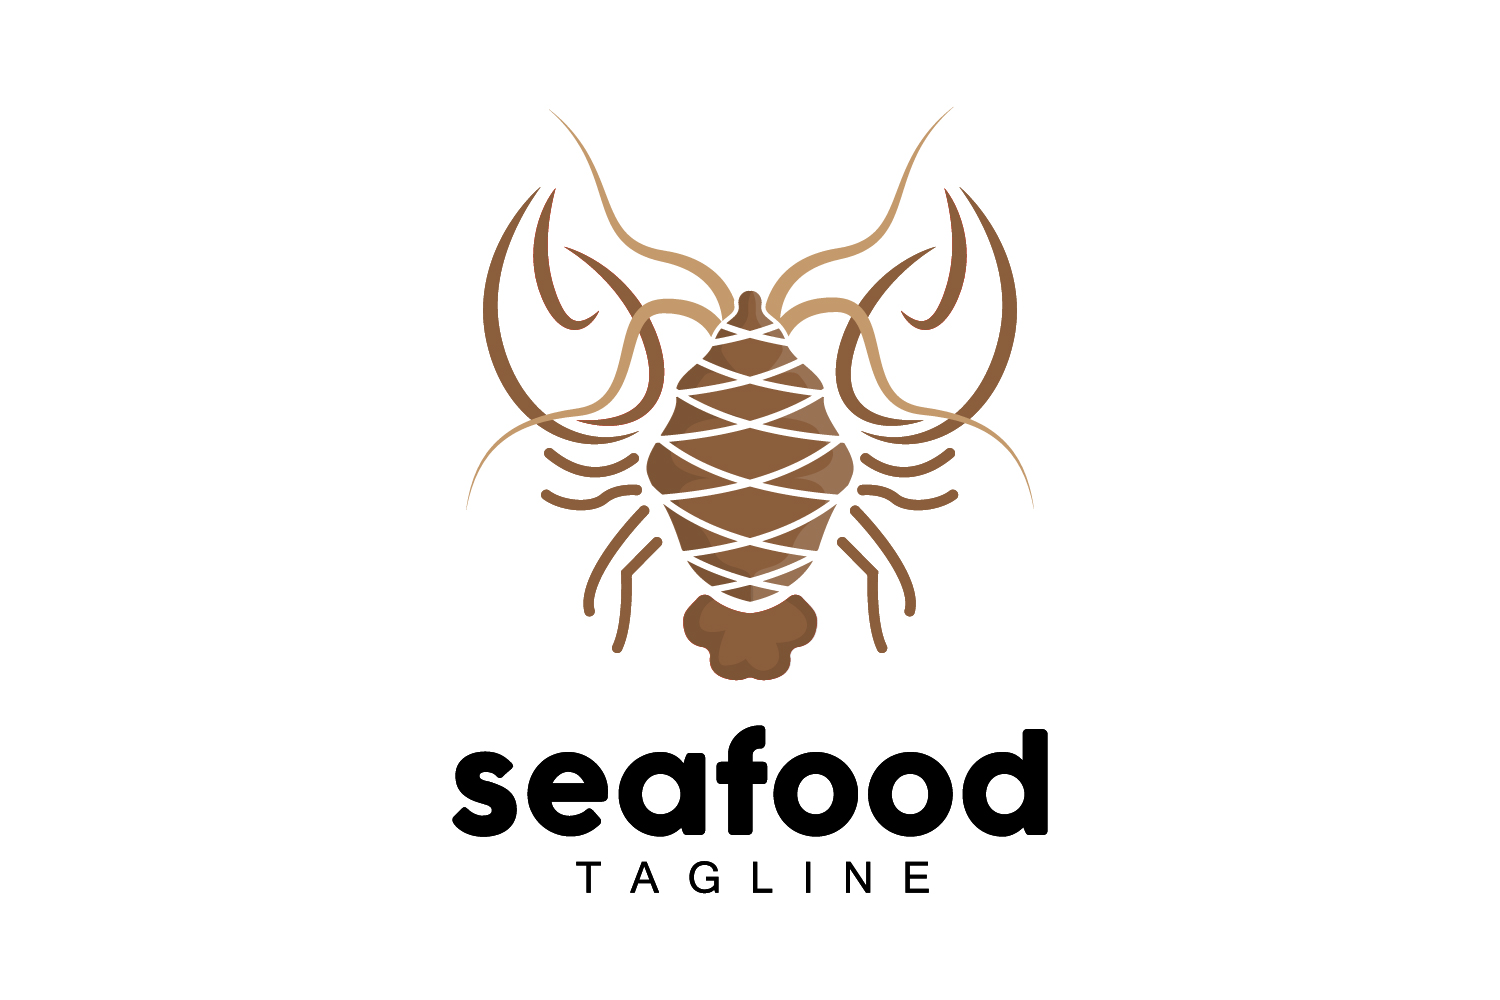 Sea animal lobster logo design vector V9